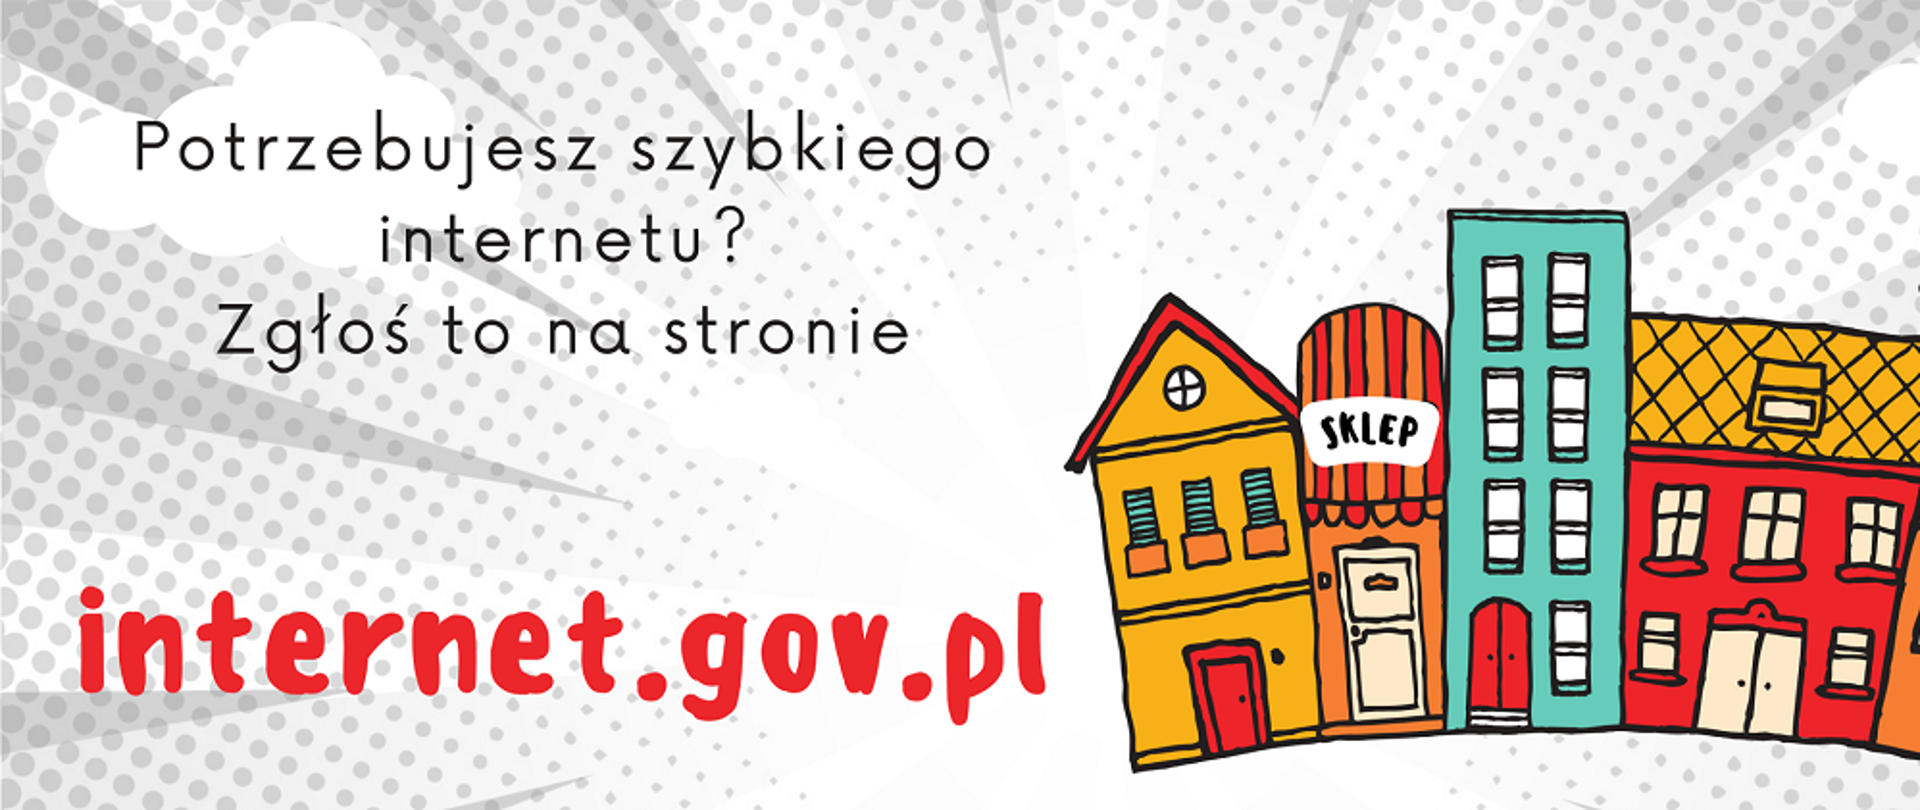 biało szare tło, z prawej strony kolorowe budynki z lewej ciemni literami napisane potrzebujesz szybkiego internetu na dole czerwona grubą czcionka internet.gov.pl